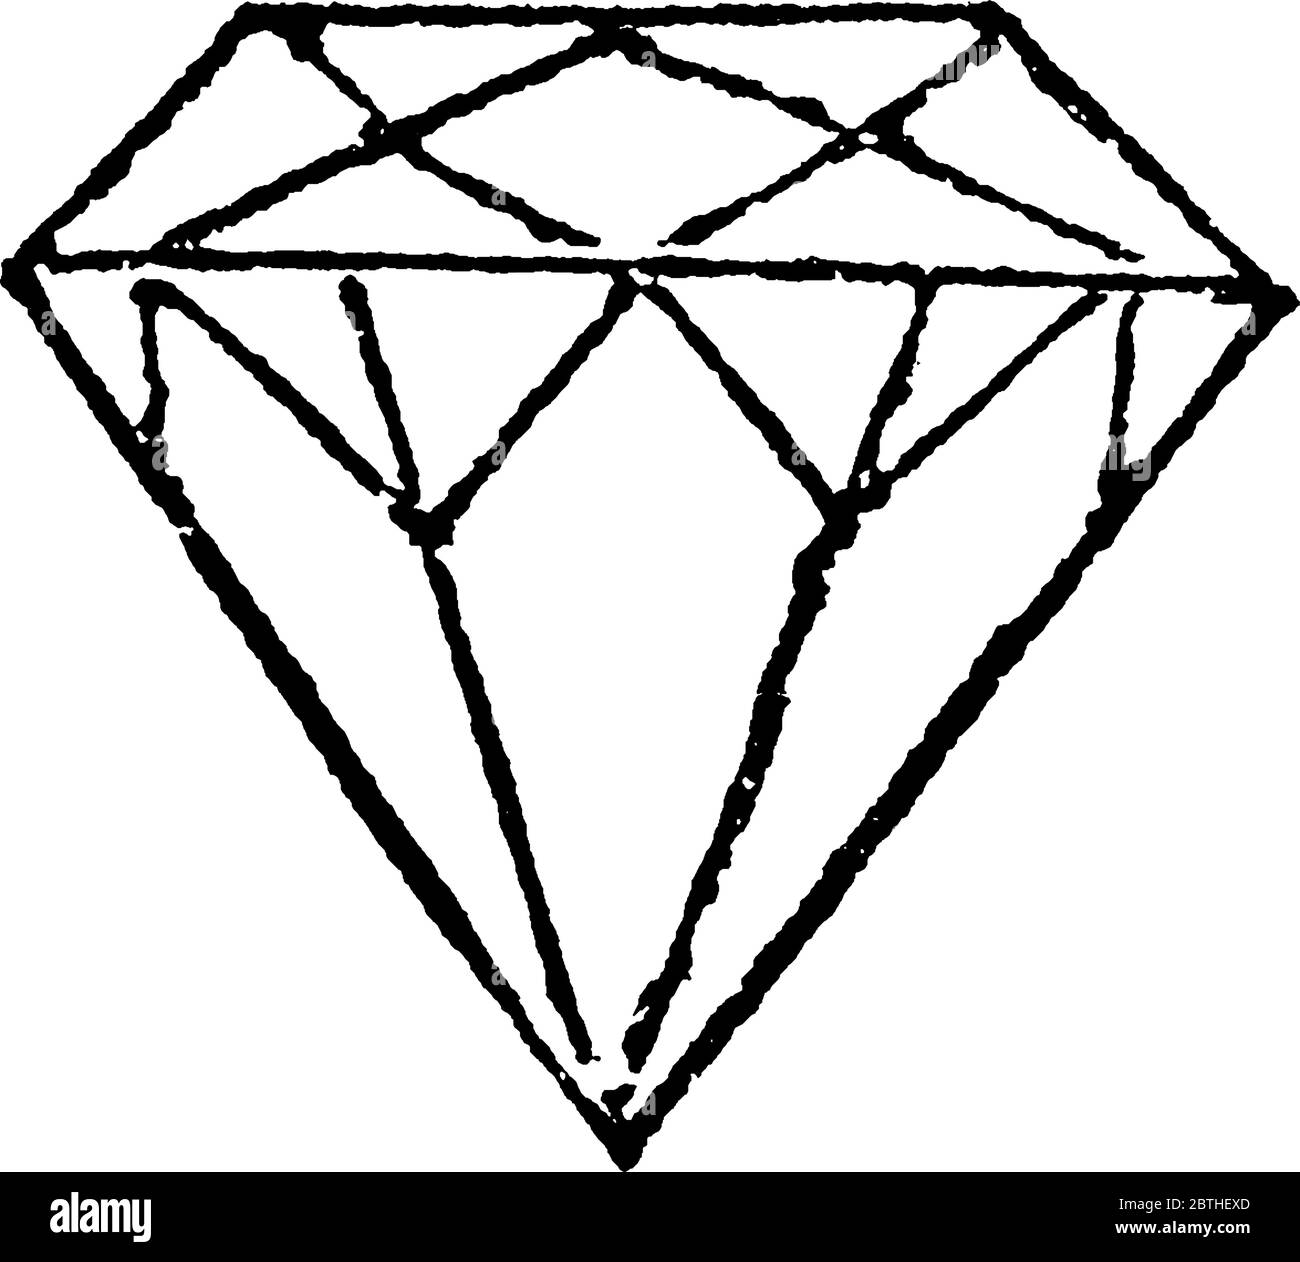 Diamant ist eine feste Form des Elements Kohlenstoff mit seinen Atomen in  einer Kristallstruktur namens Diamant kubisch angeordnet, vintage  Linienzeichnung oder Gravur i Stock-Vektorgrafik - Alamy